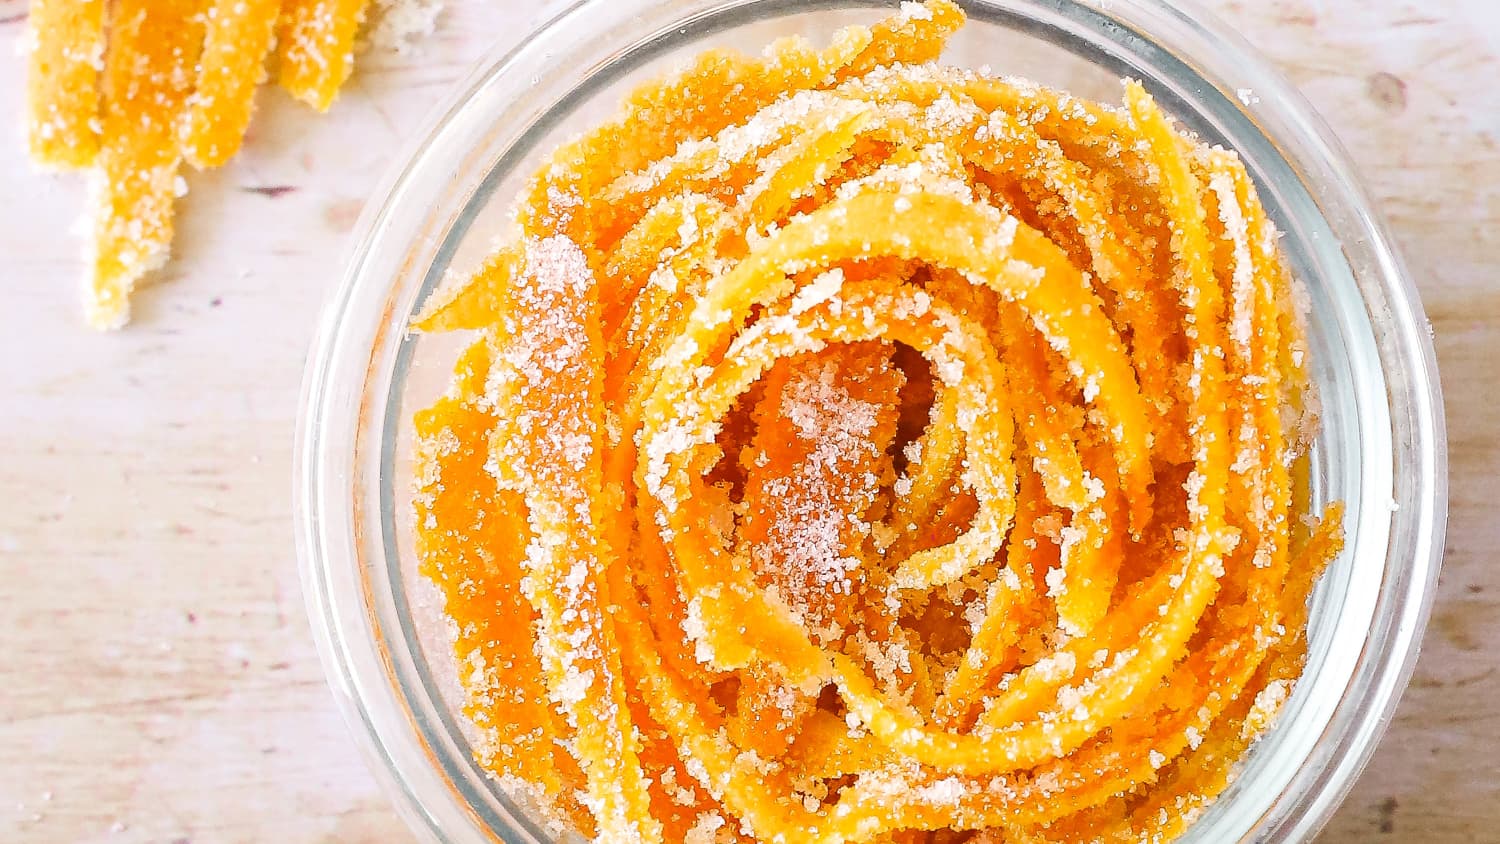 Candied Orange Peel - The Daring Gourmet